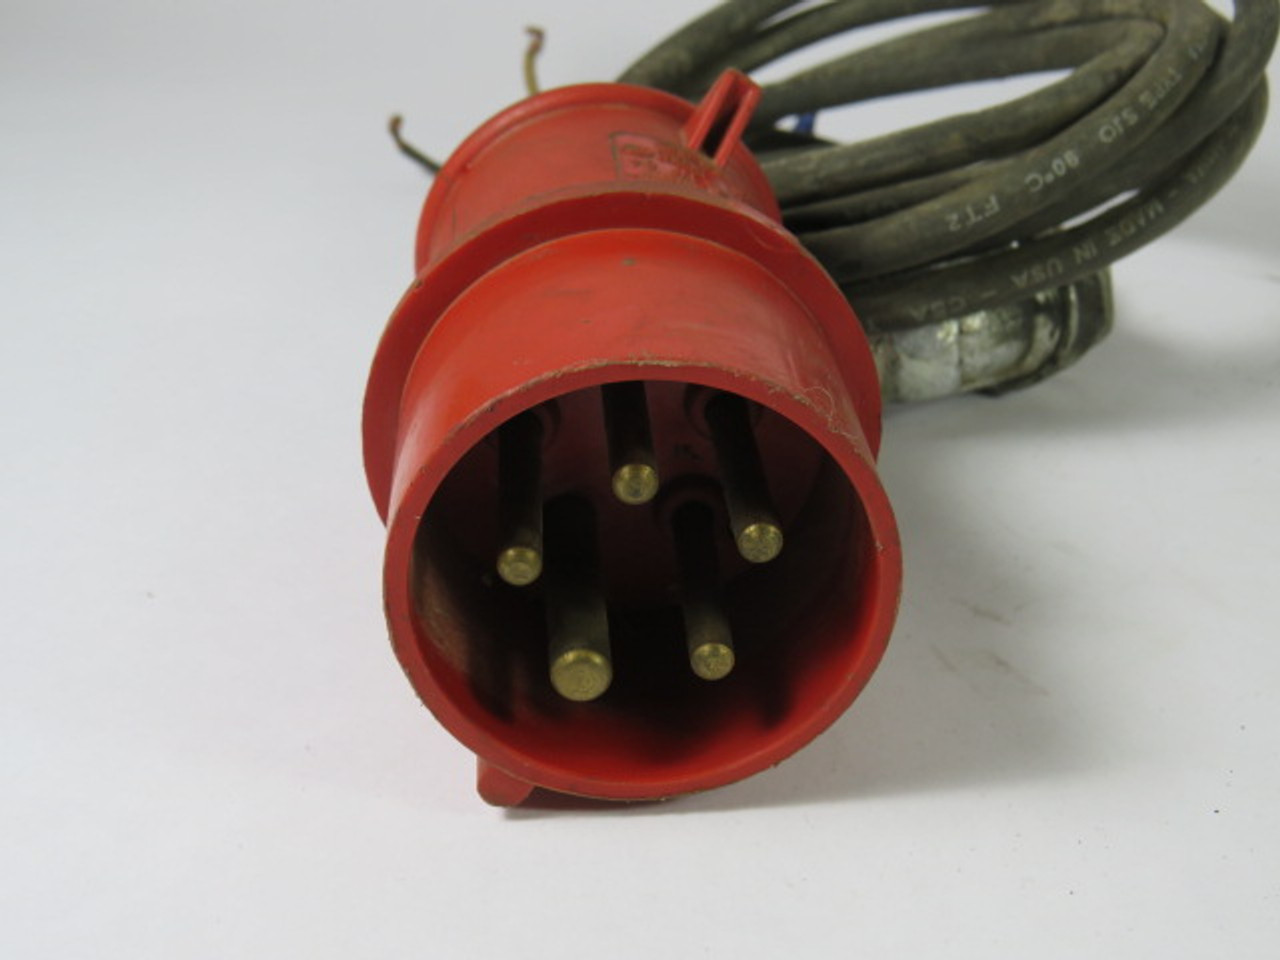 CeeNorm Type-64 Male Plug W/ Cable 16A-6h 220/380V 240/415V 3P+N+E USED